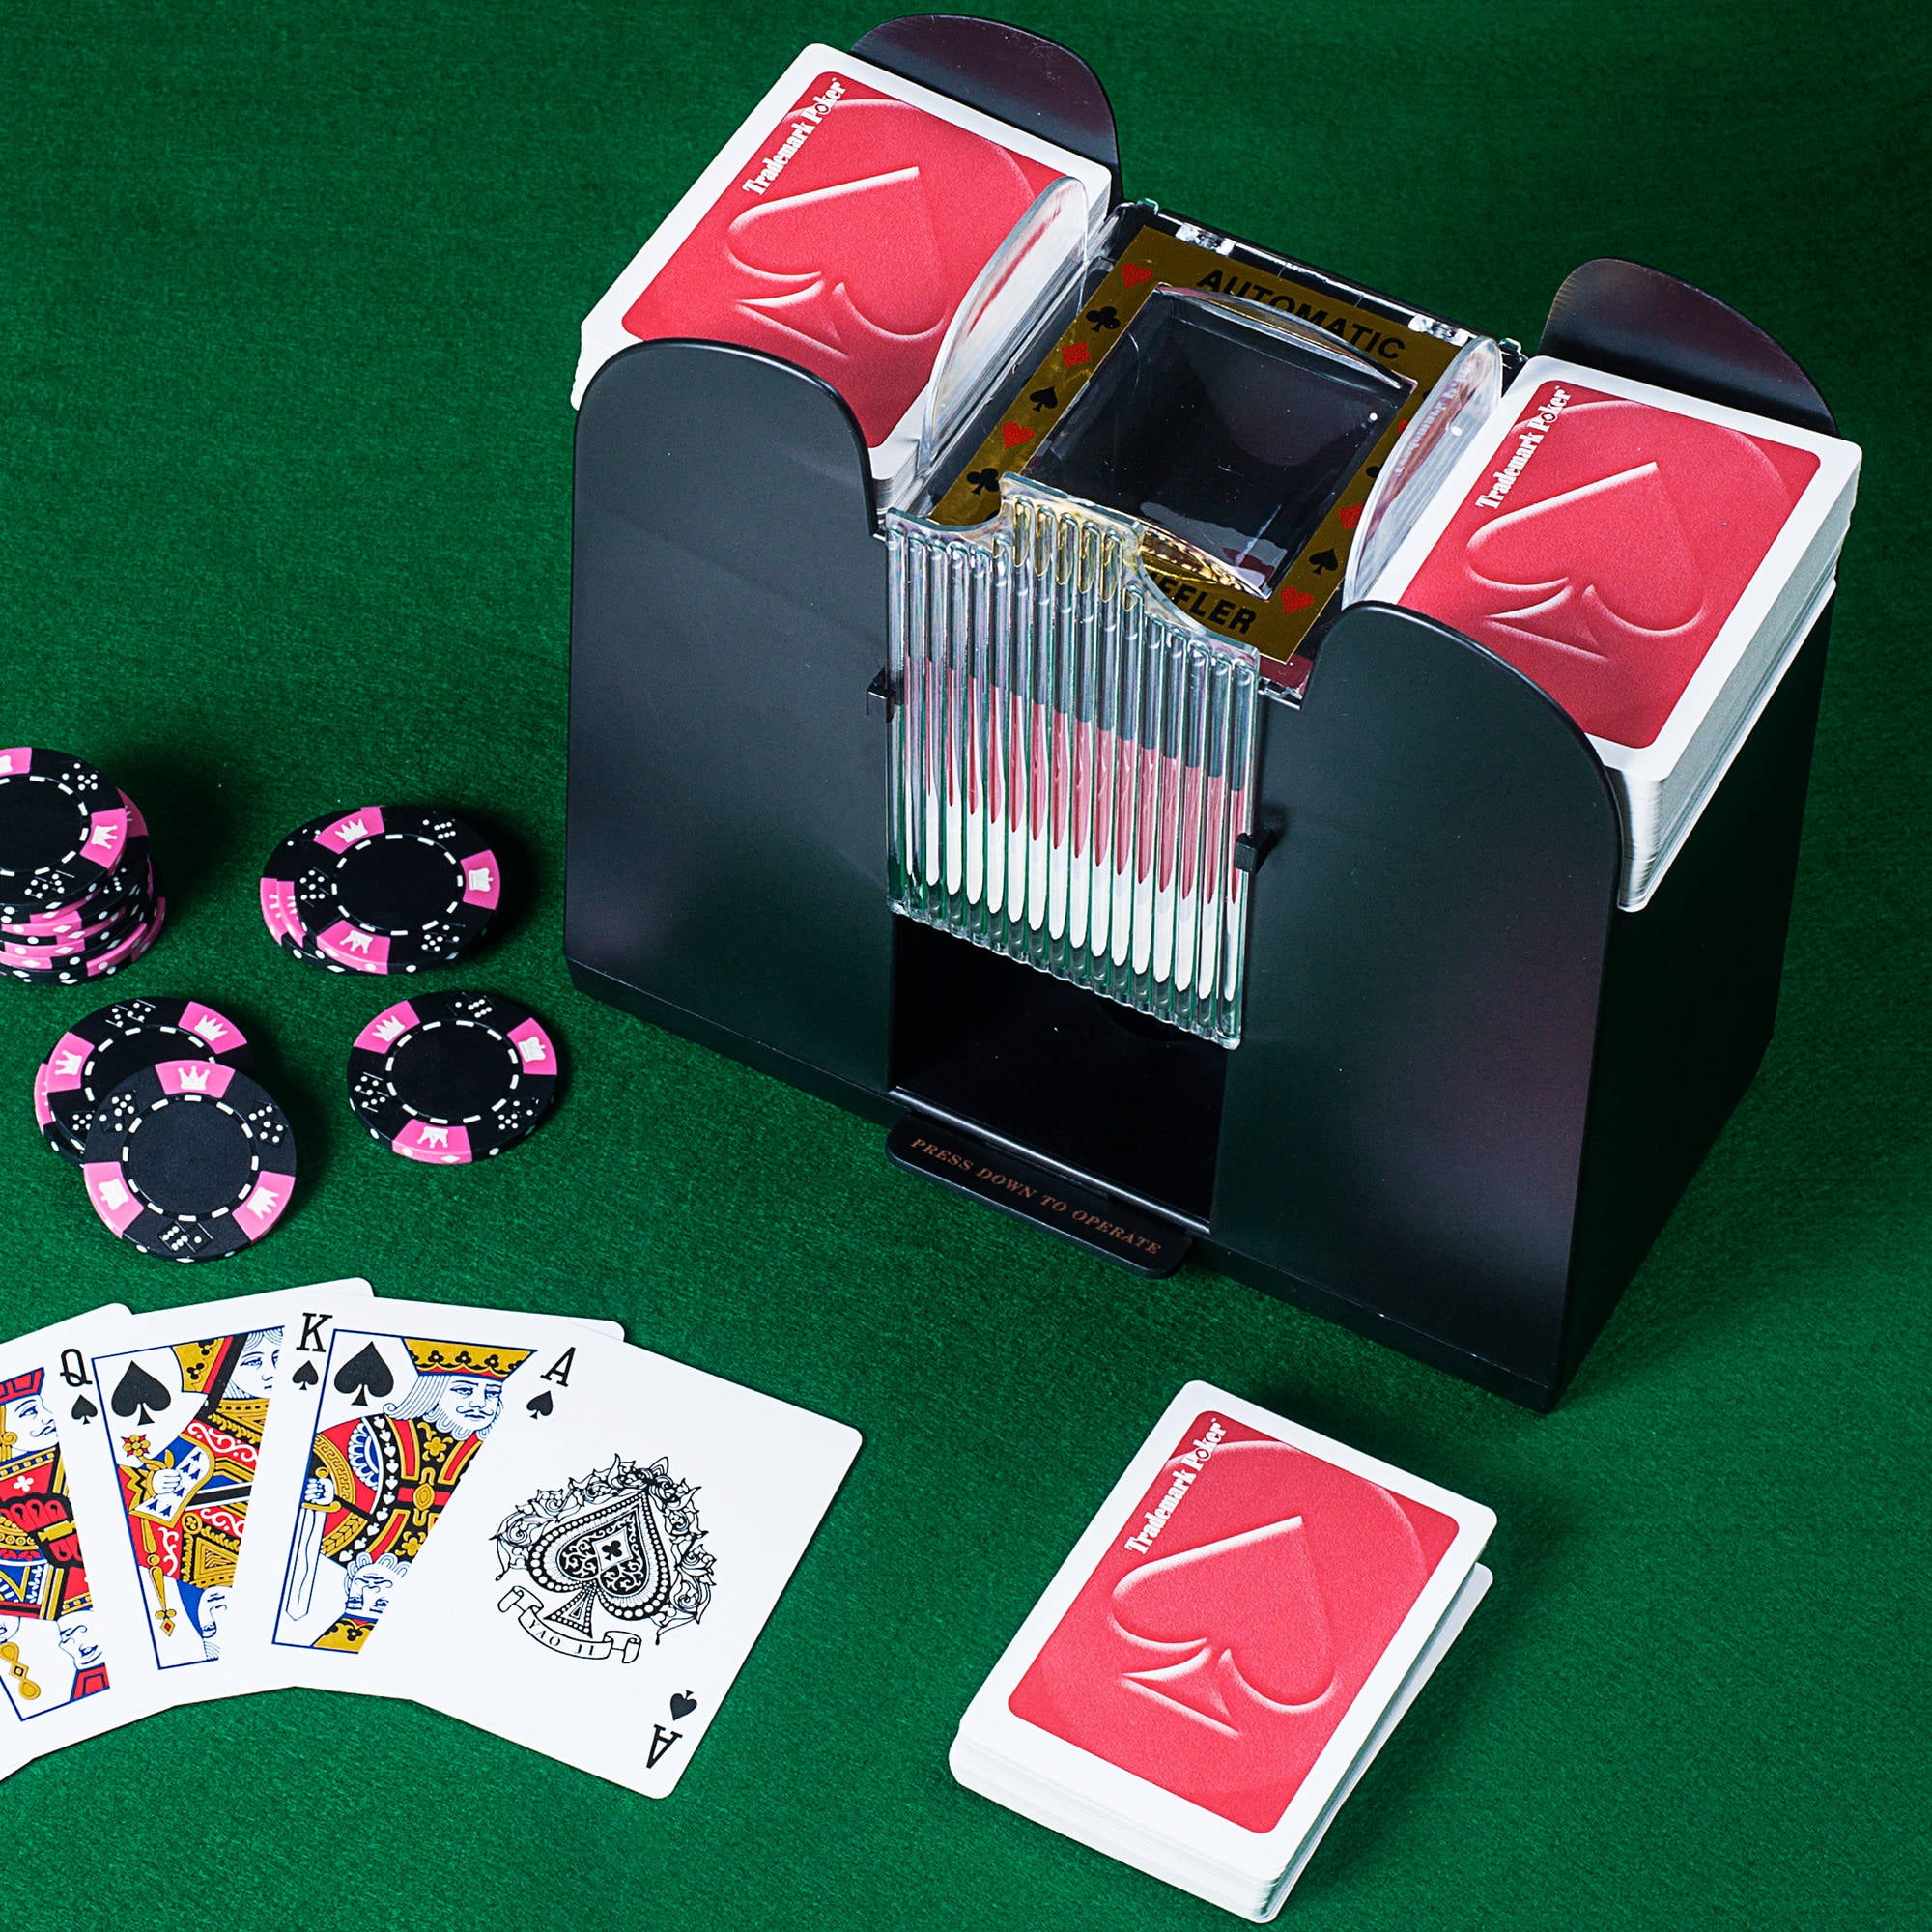 6-Deck Playing Cards Gift Automatic Card Shuffler Machine Shuffling Casino New 